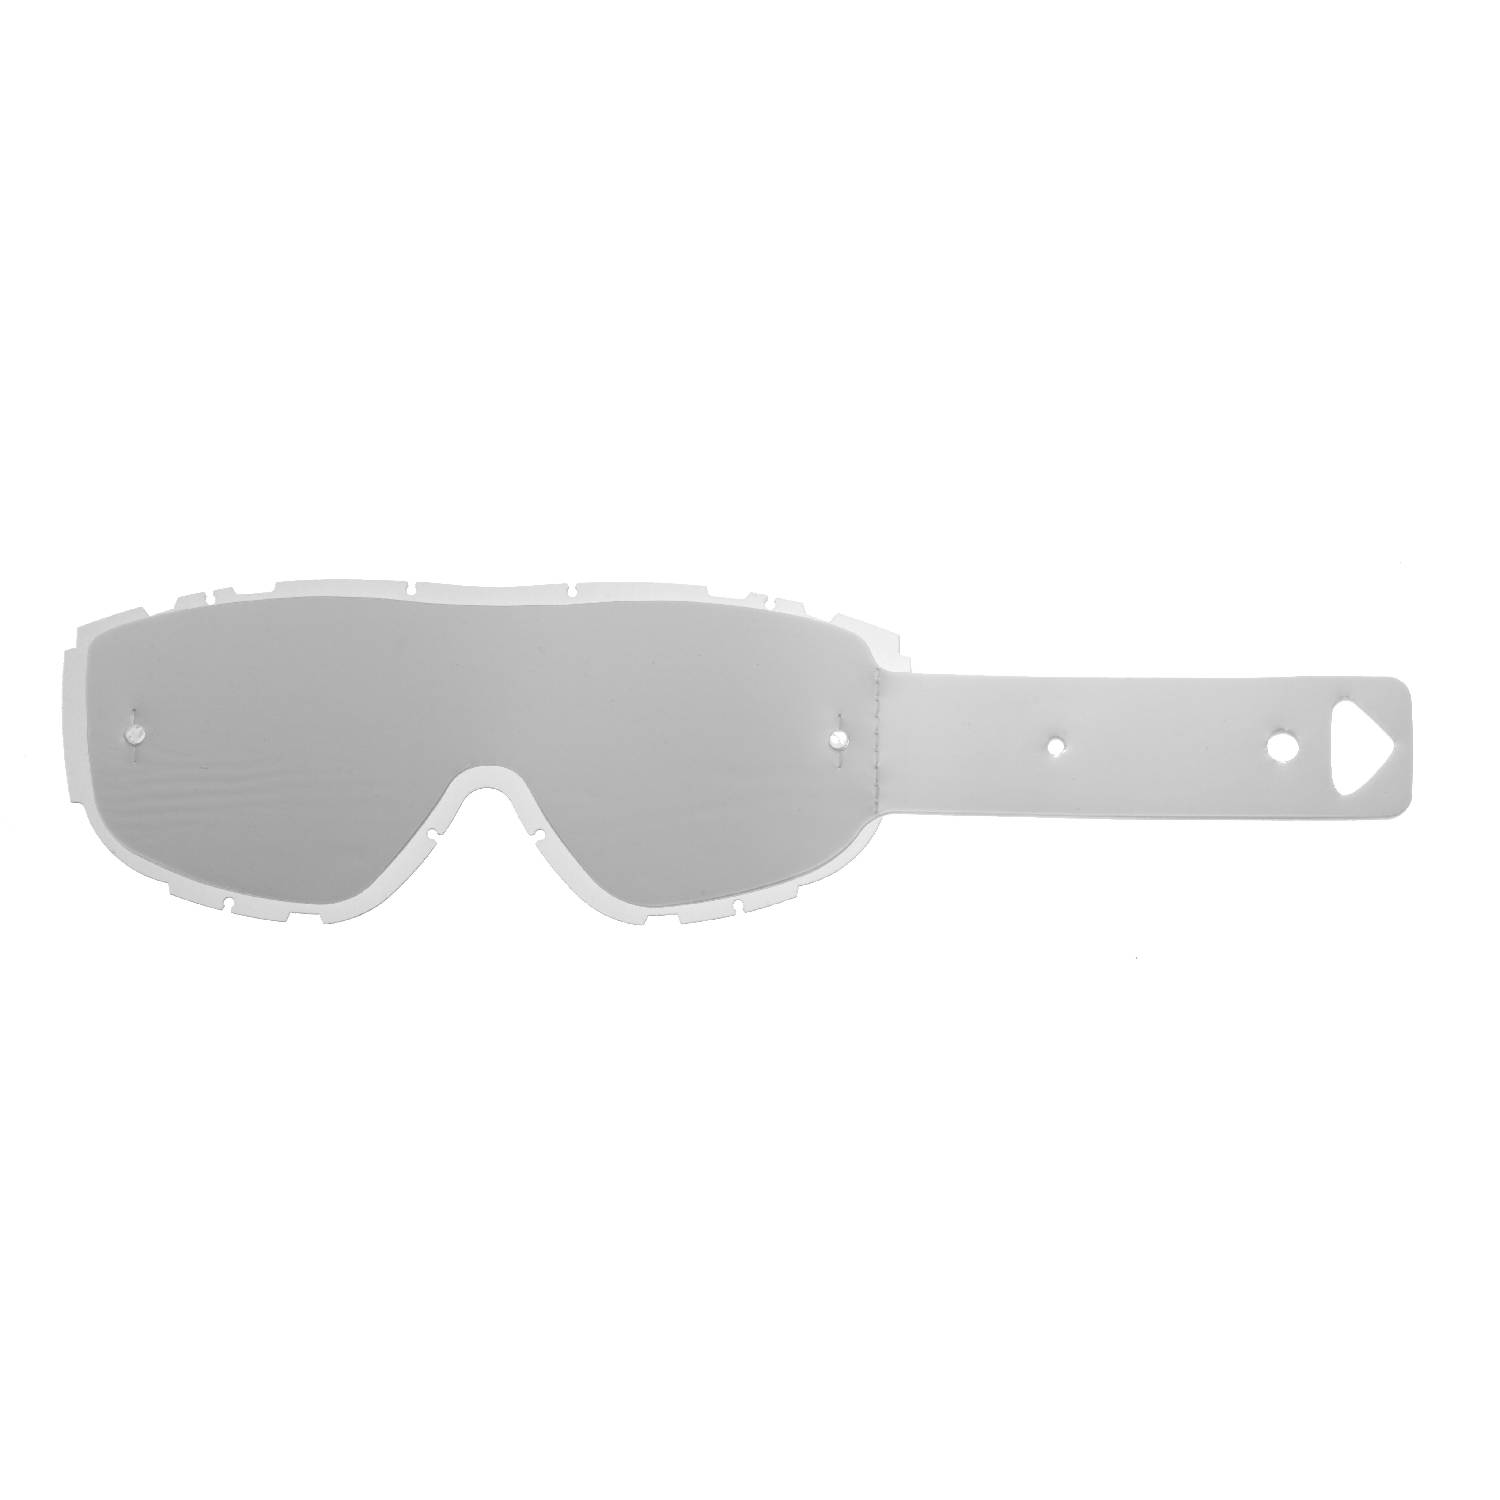 Lente trasparente + 10 Strappi (Combo) compatibile per occhiale/maschera Smith Piston